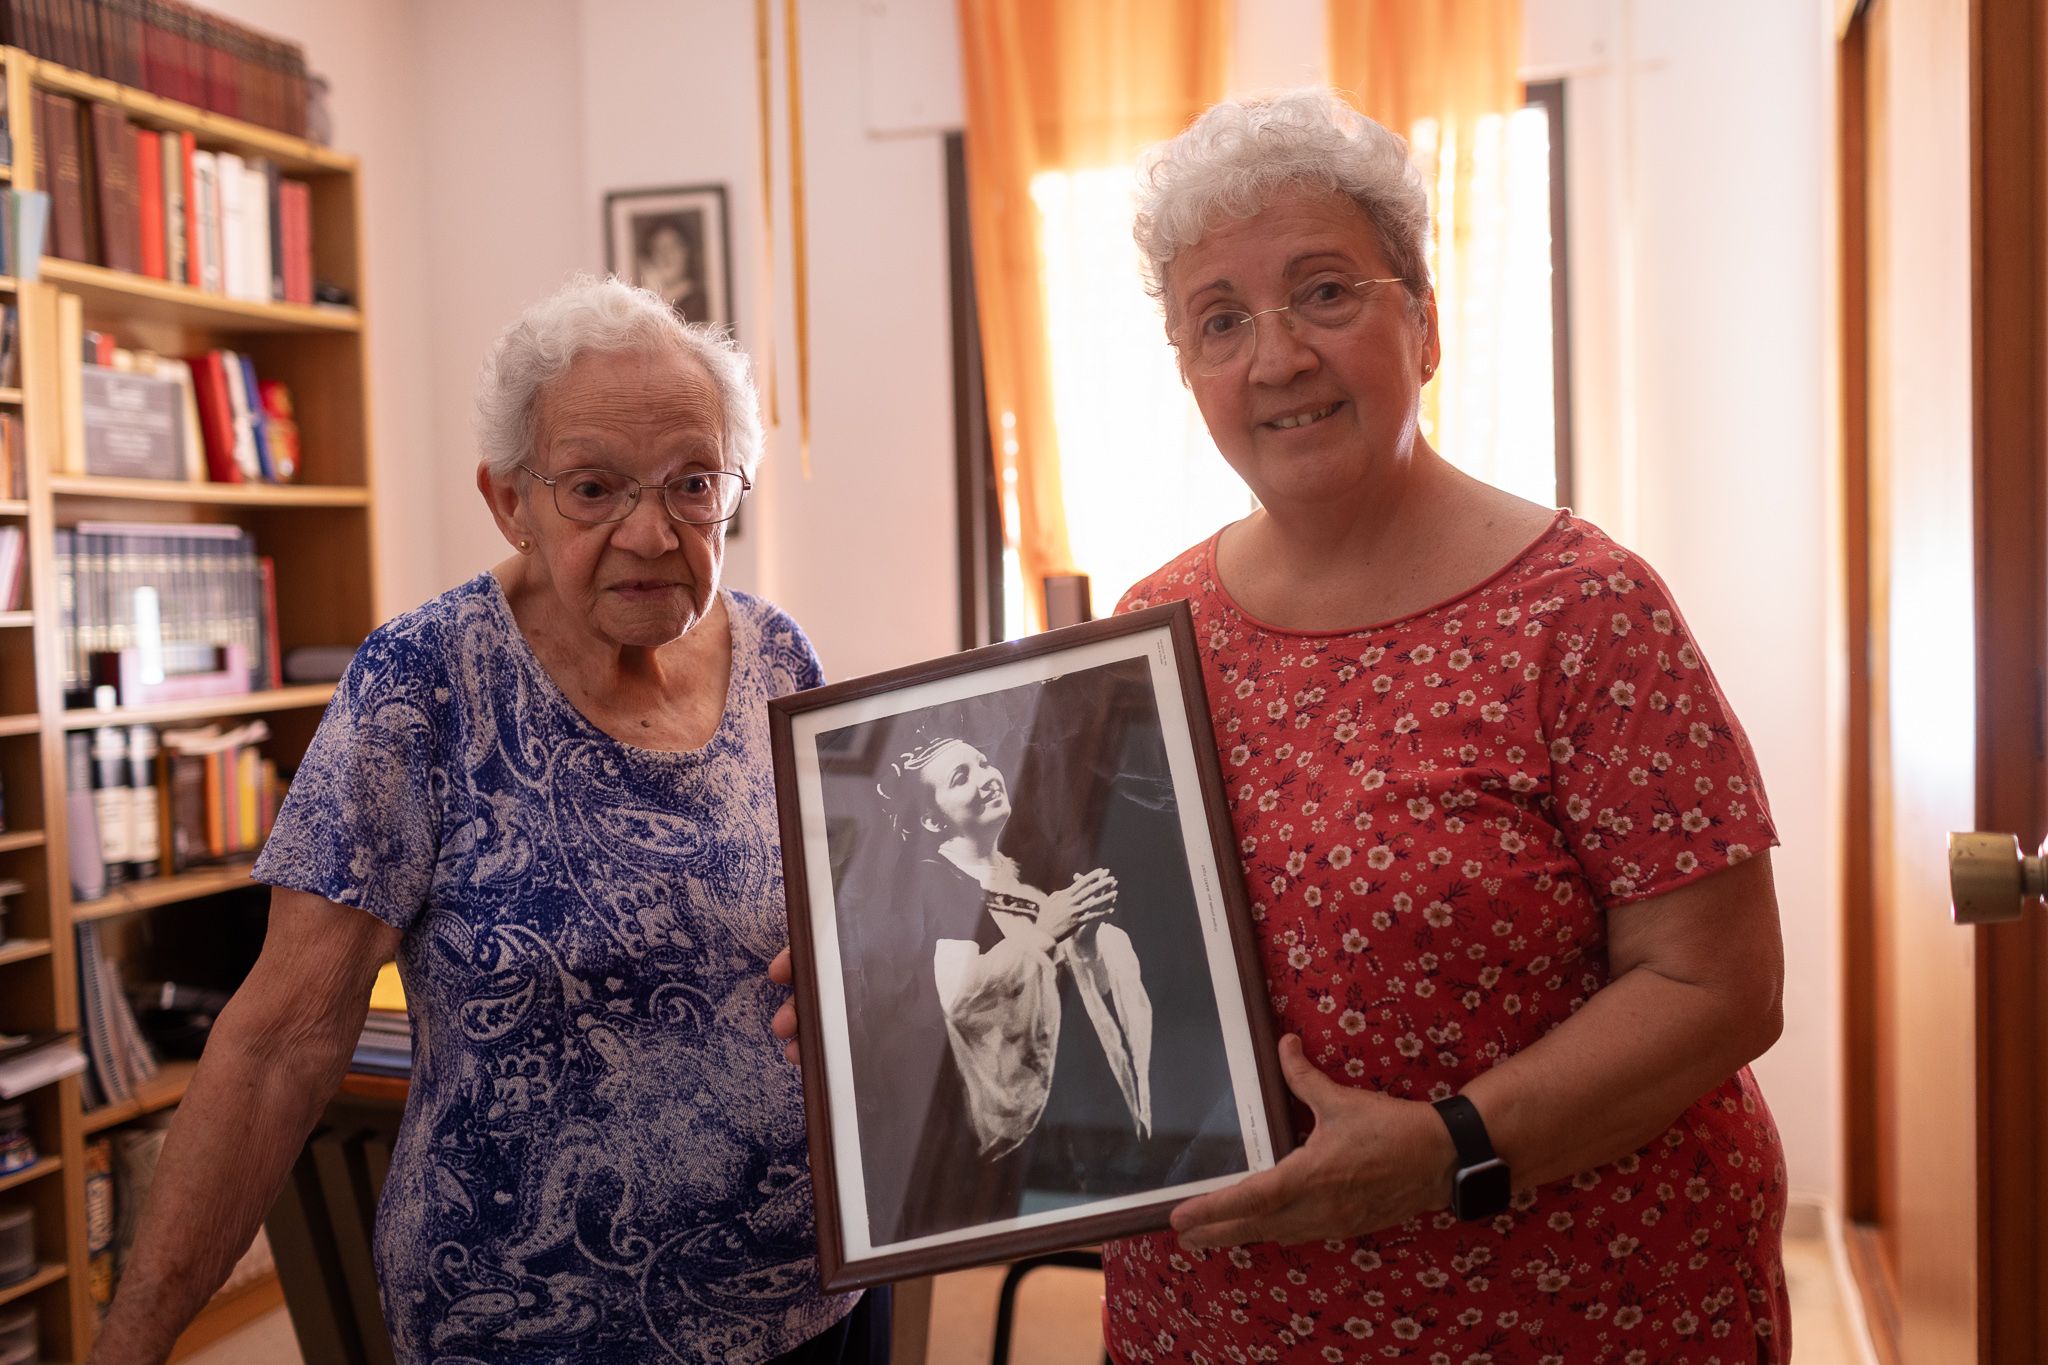 Sombras de Cuba desde el exilio andaluz. Emelina Morejón junto a su hija Emelina López, que sostiene una fotografía de su primer concierto en La Habana, en días pasados en su domicilio de Jerez.